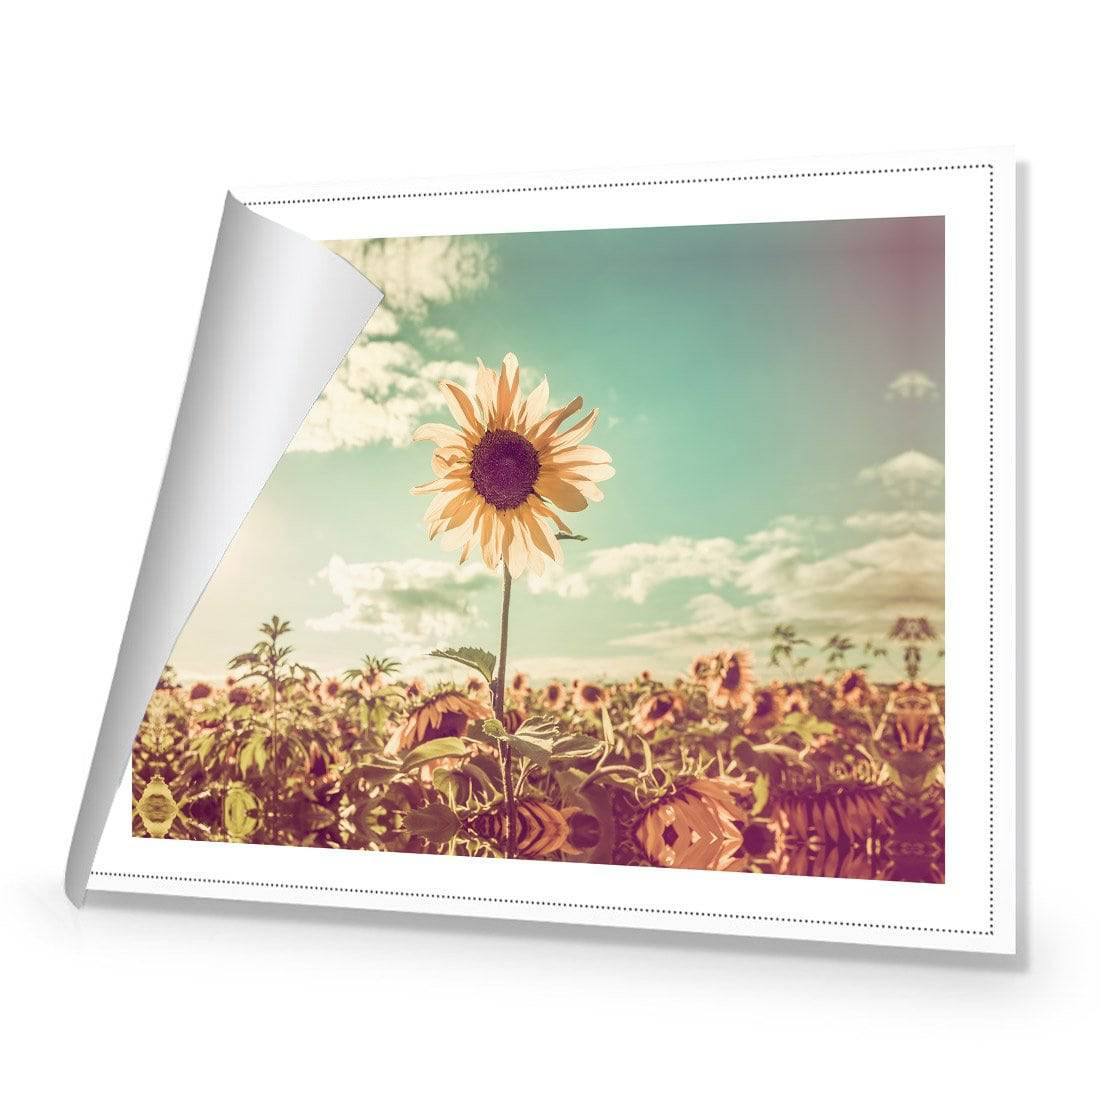 Sunflower Reborn Canvas Art-Canvas-Wall Art Designs-45x30cm-Rolled Canvas-Wall Art Designs